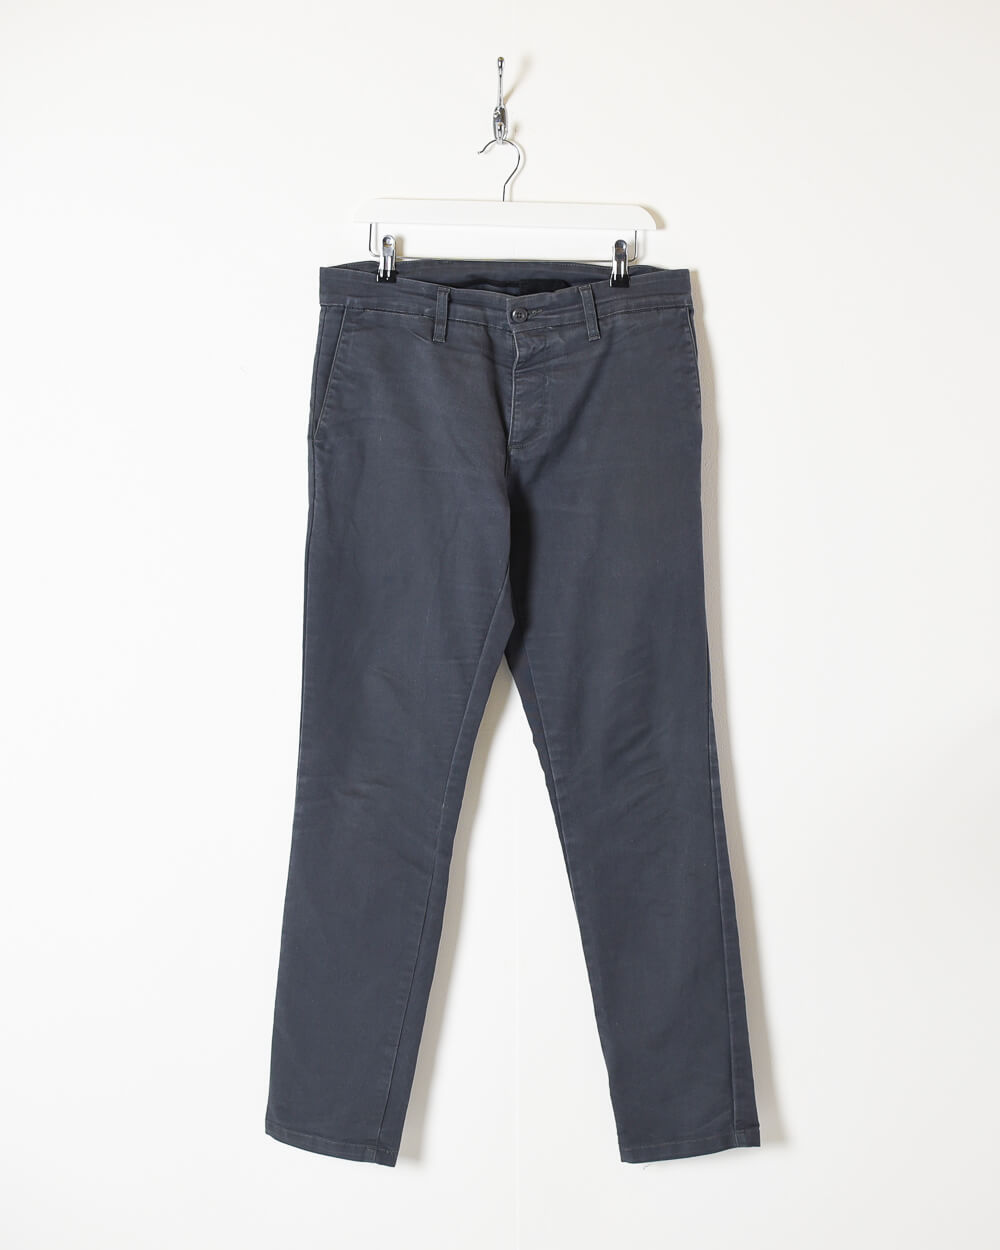 Grey Carhartt Trousers - W34 L32